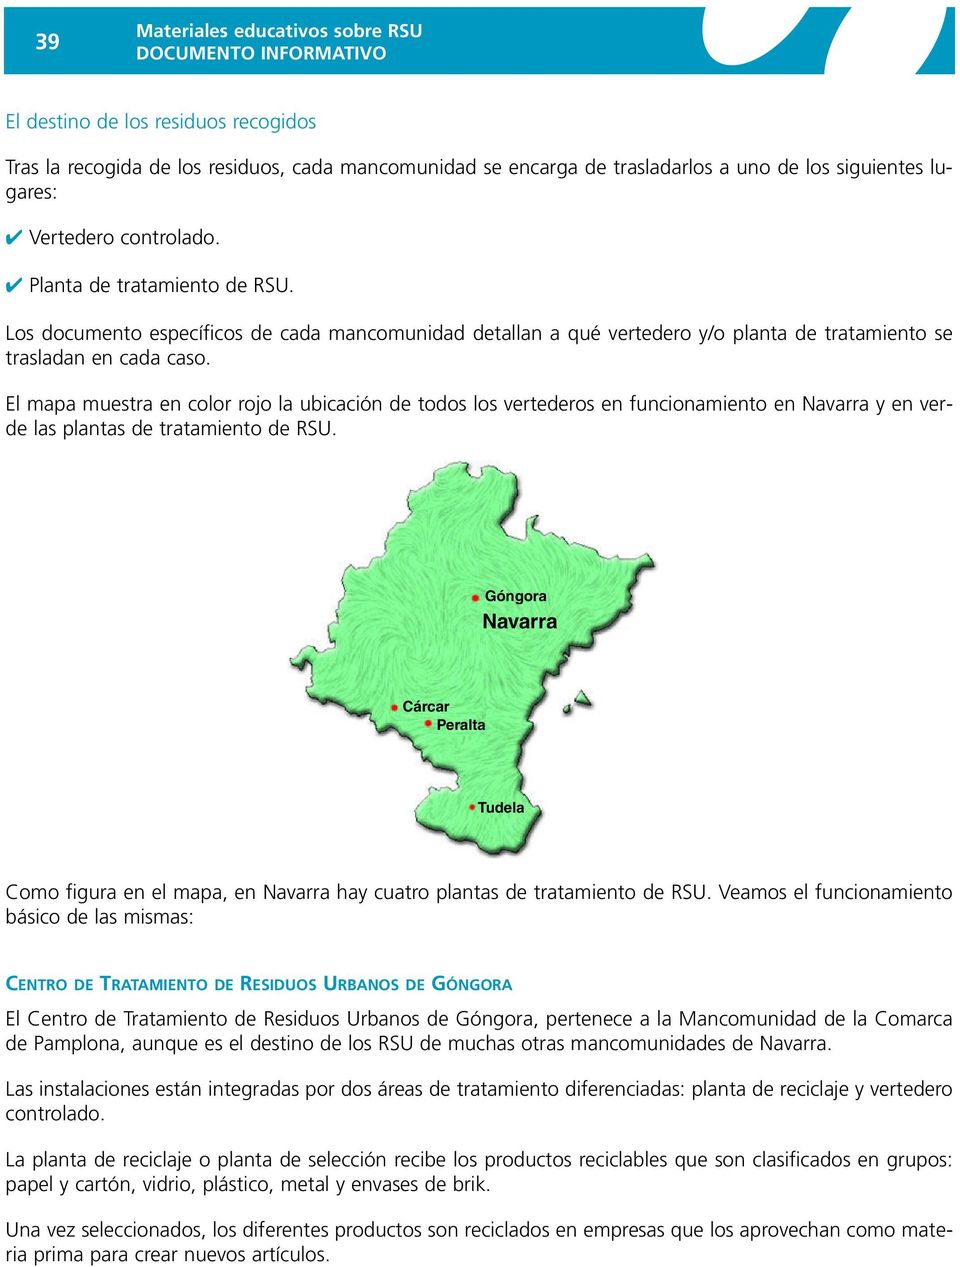 El mapa muestra en color rojo la ubicación de todos los vertederos en funcionamiento en Navarra y en las plantas de tratamiento de RSU.